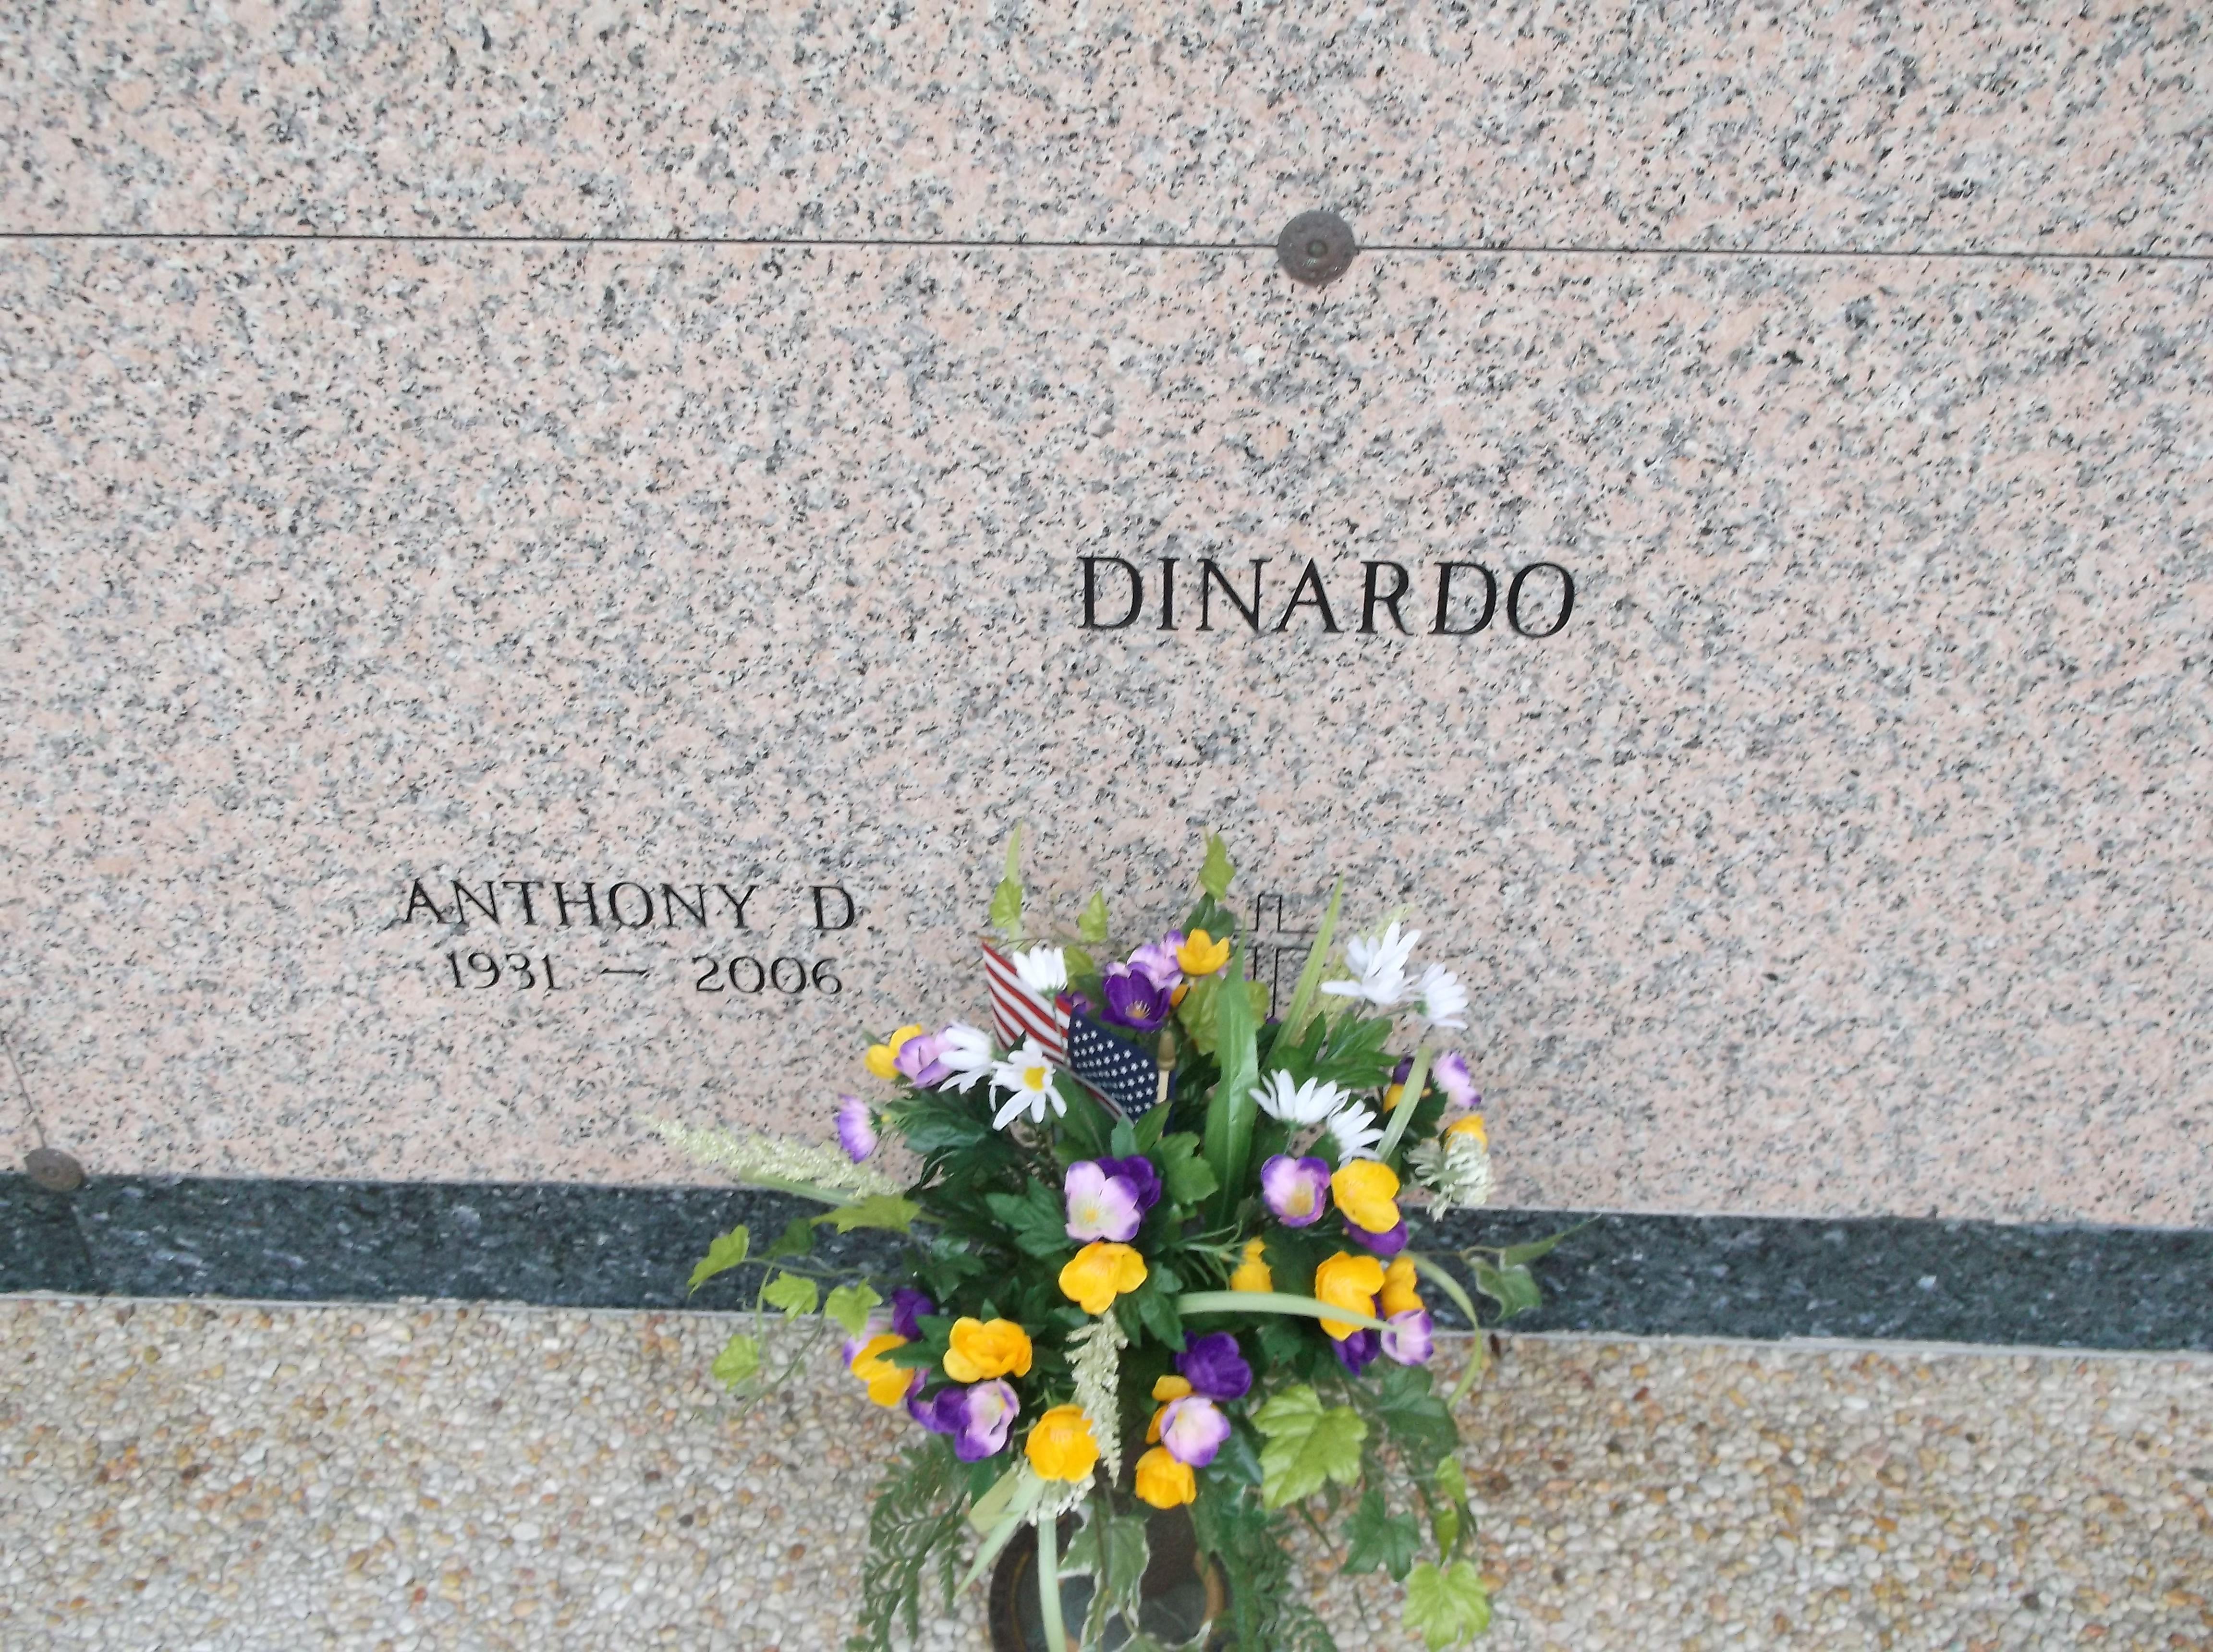 Anthony D Dinardo